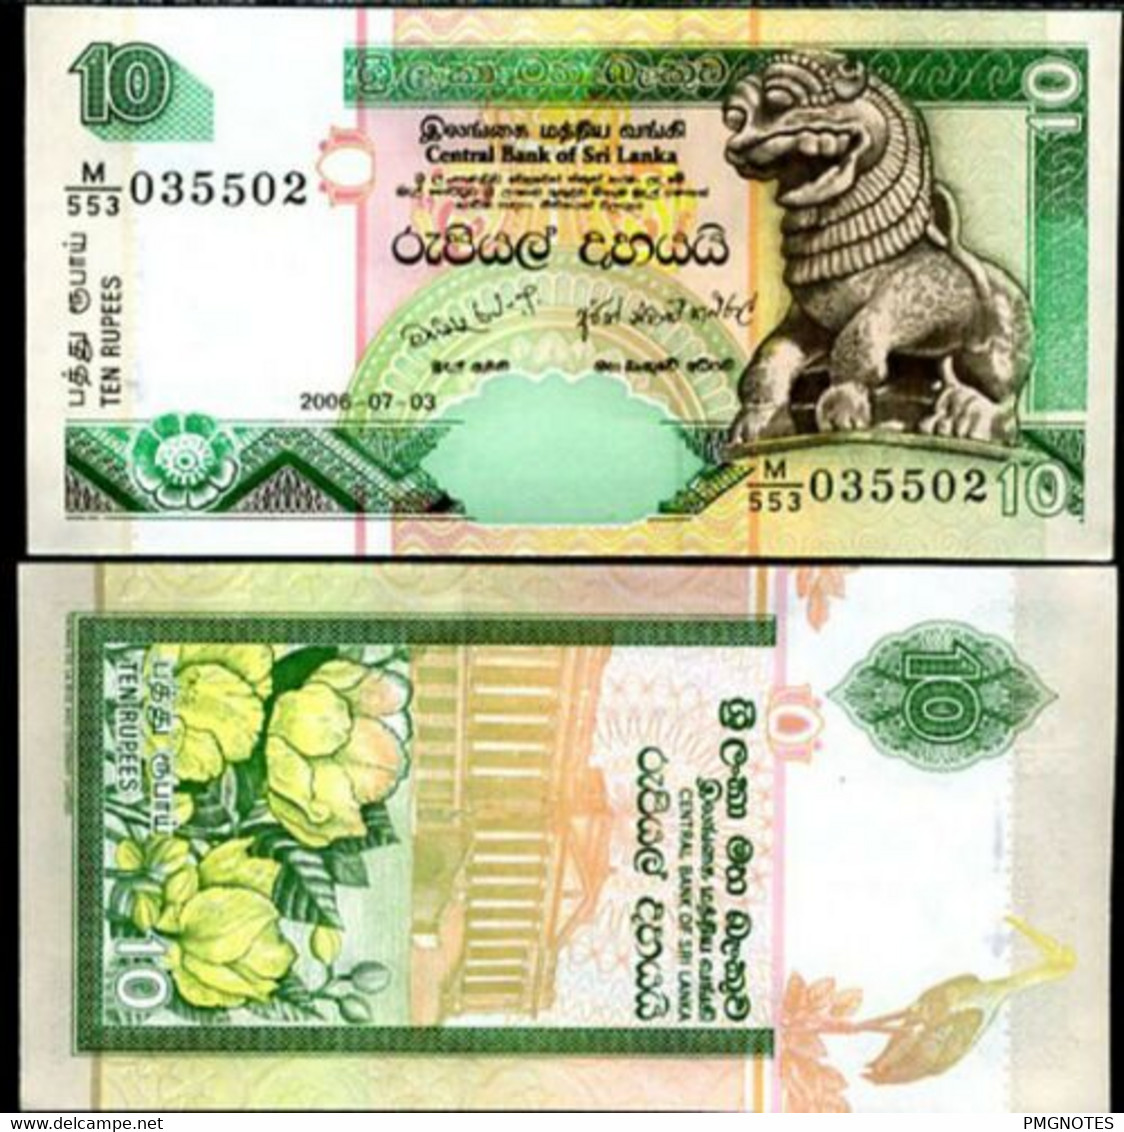 Sri Lanka 10 Rupees 2006 P 115 UNC - Sri Lanka